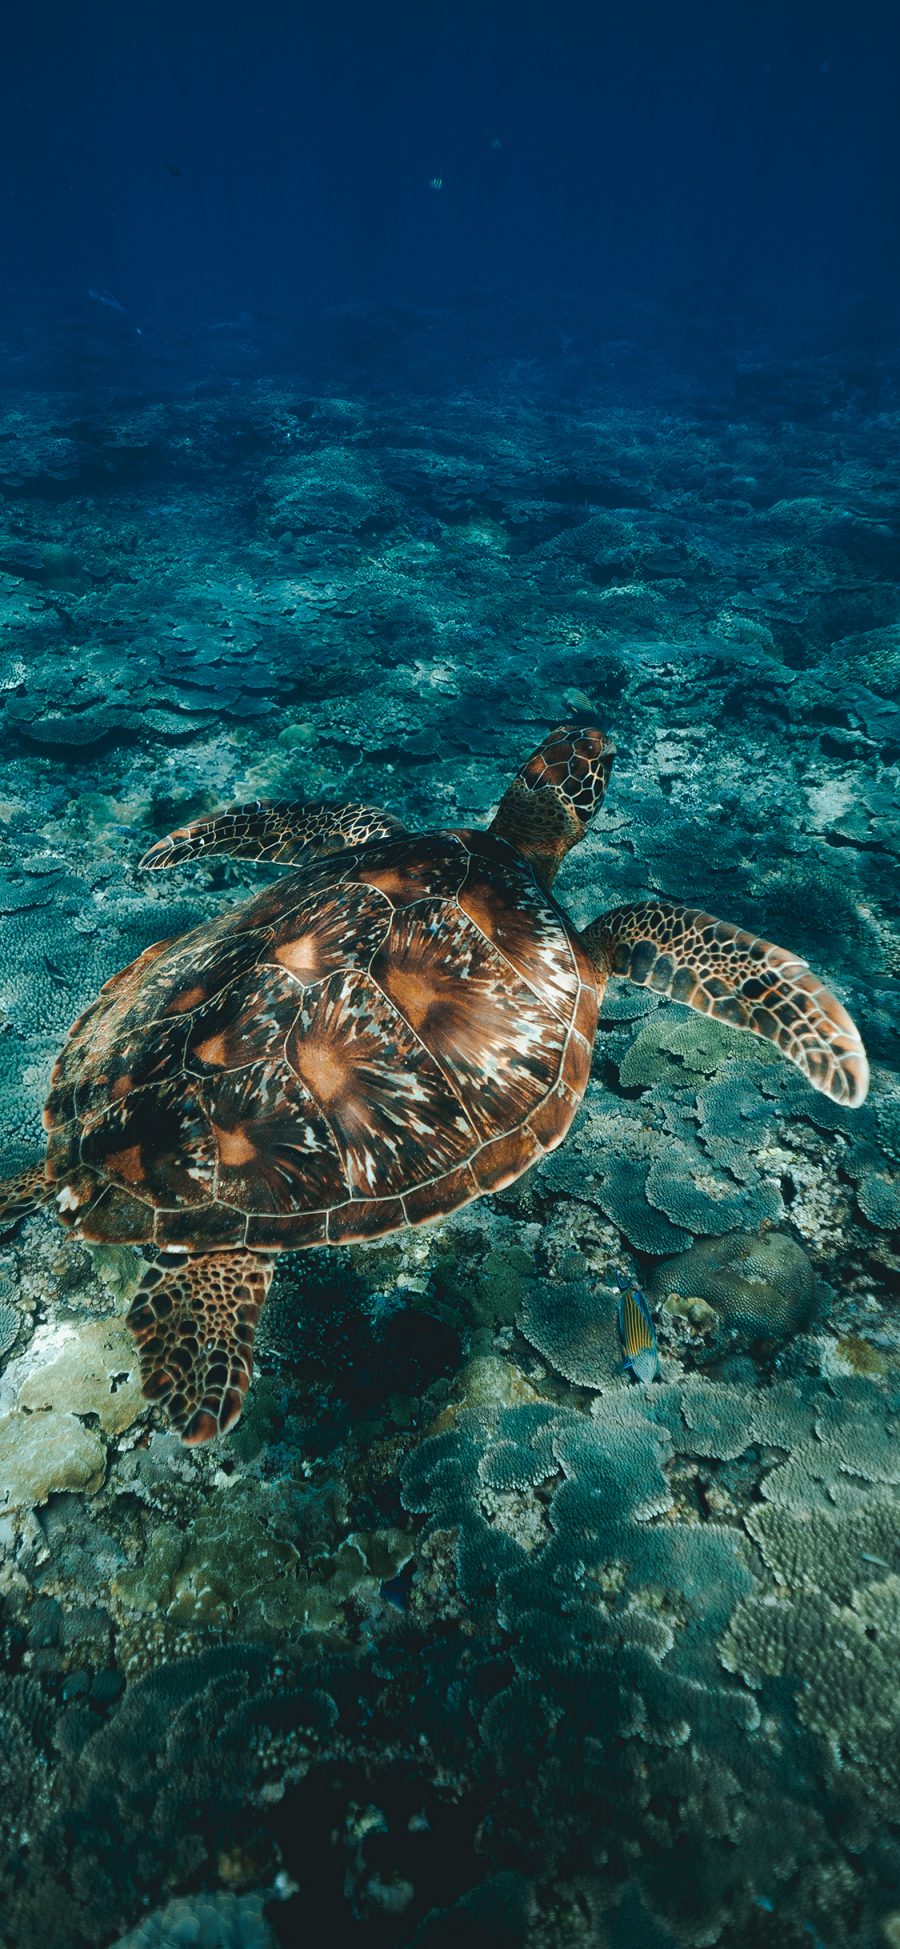 [2436×1125]海龟 长寿 海底 清澈 苹果手机壁纸图片